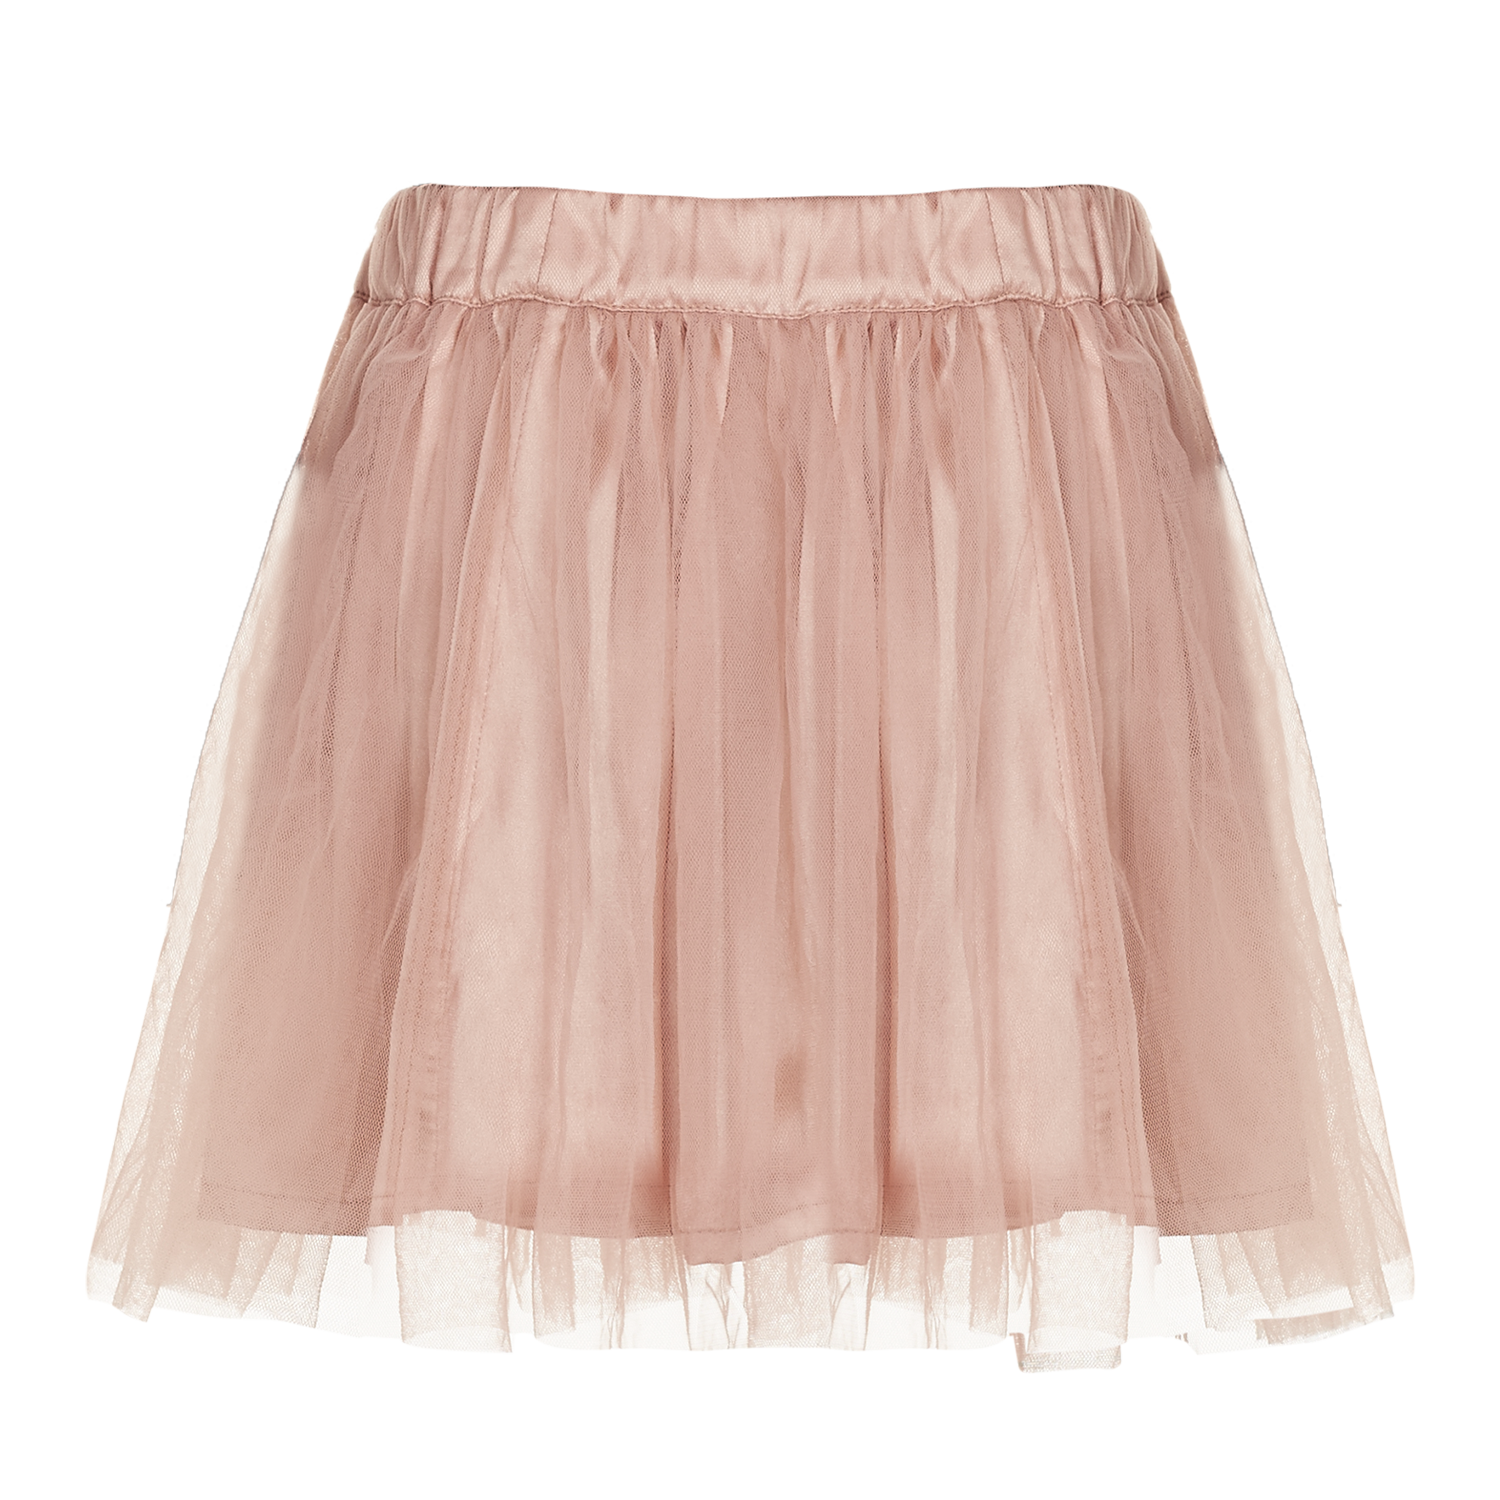 Fairy Skirt Peach